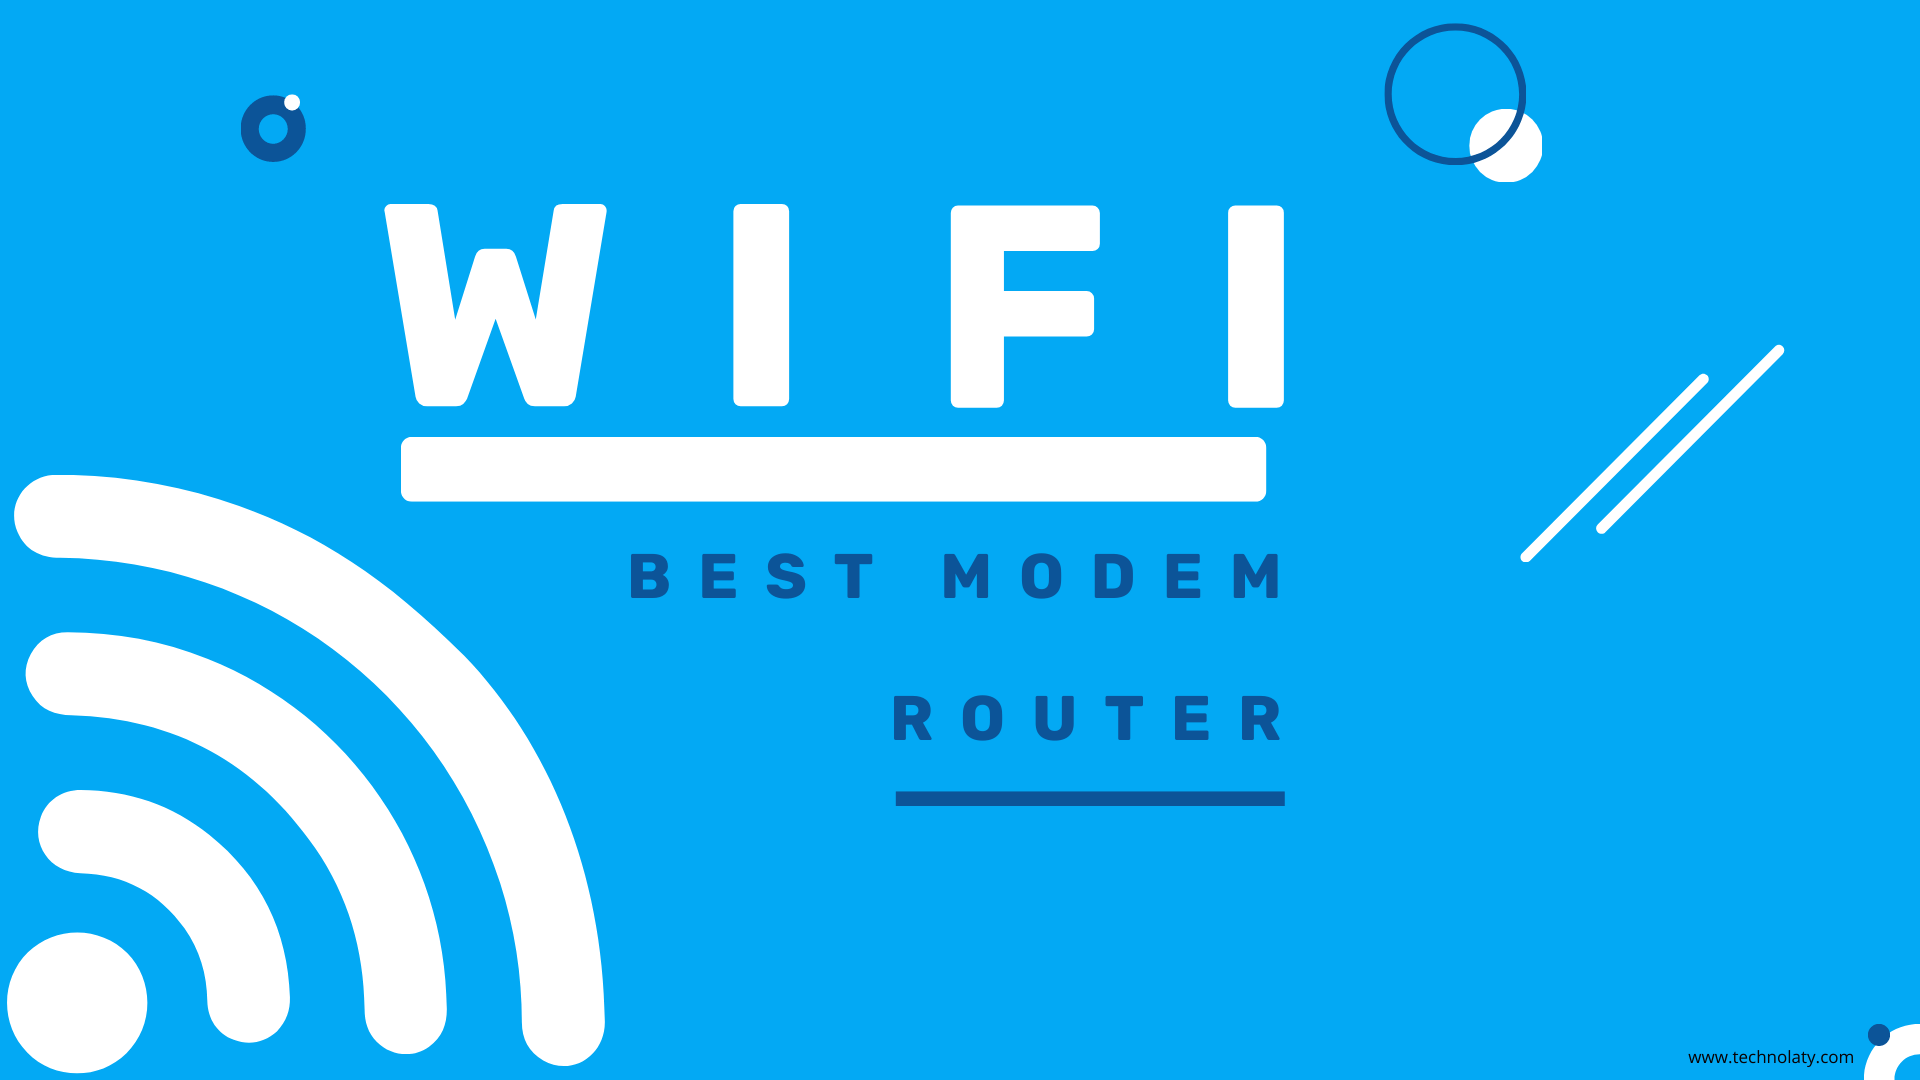 Best Modem Router Combos List